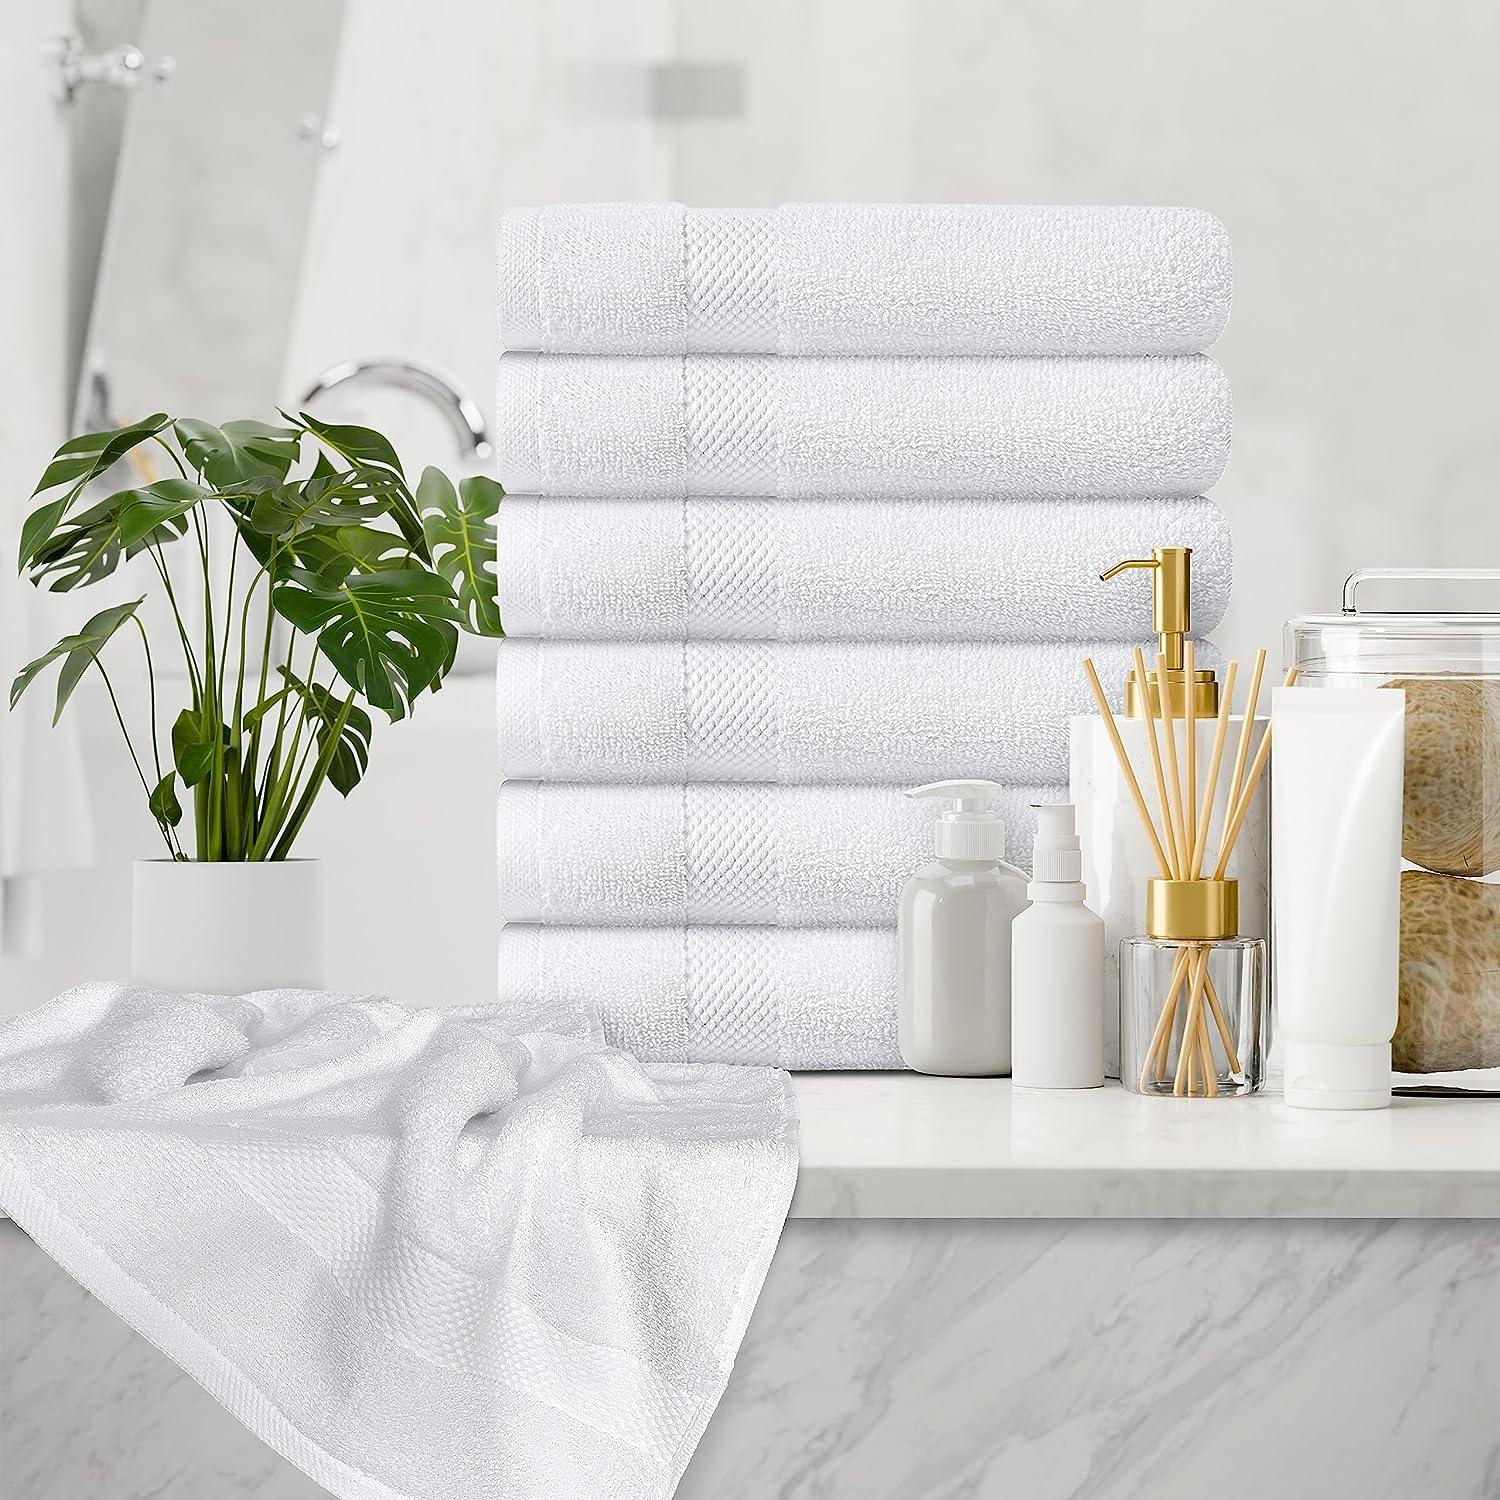 Toallas de baño de lujo para Hotel, juego de toallas de mano suaves y  absorbentes, de alta calidad, 100% algodón, bordado blanco, novedad de 2020  - AliExpress